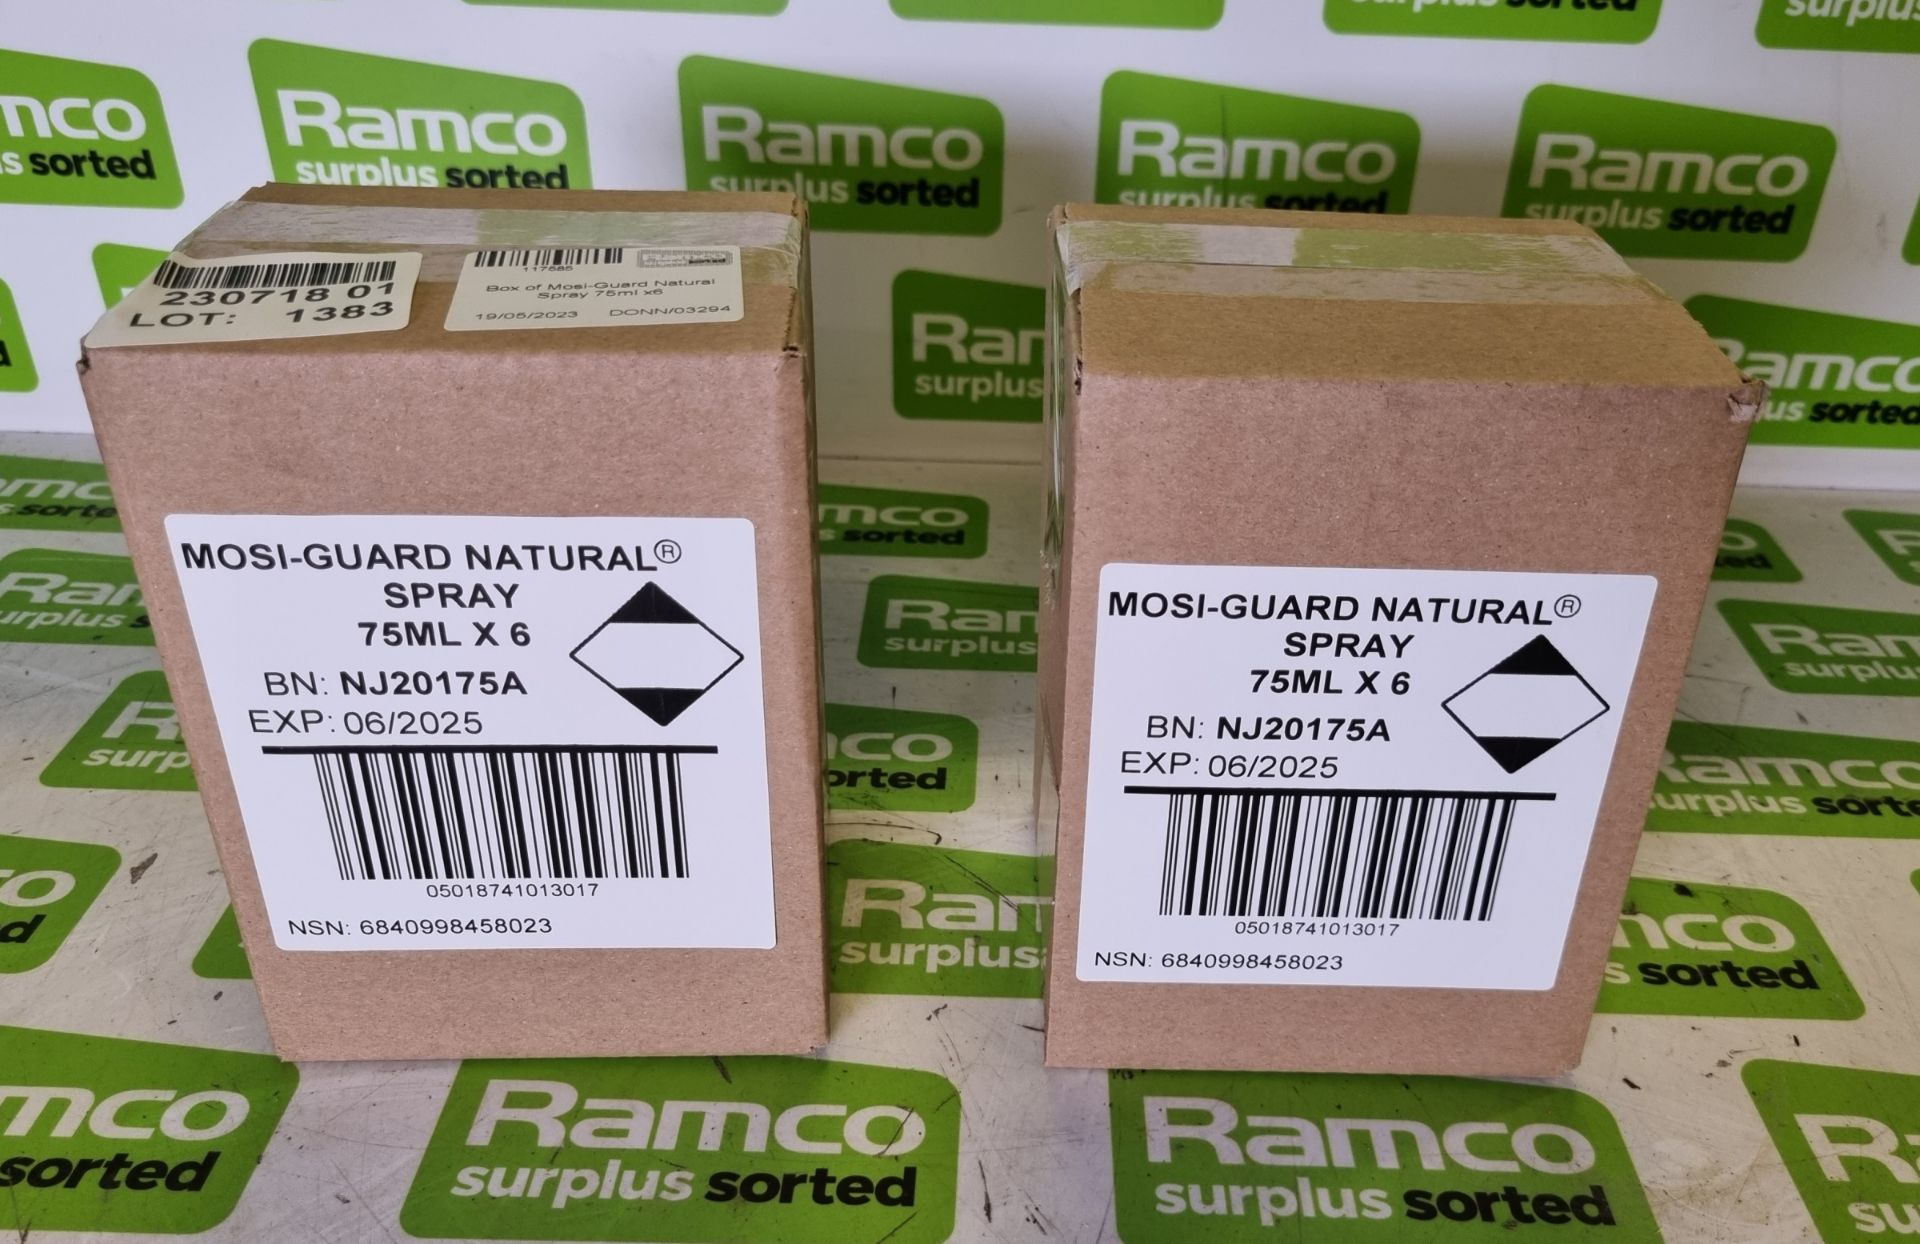 2x boxes of Mosi-Guard Natural Spray 75ml - 6 per box - Image 3 of 4